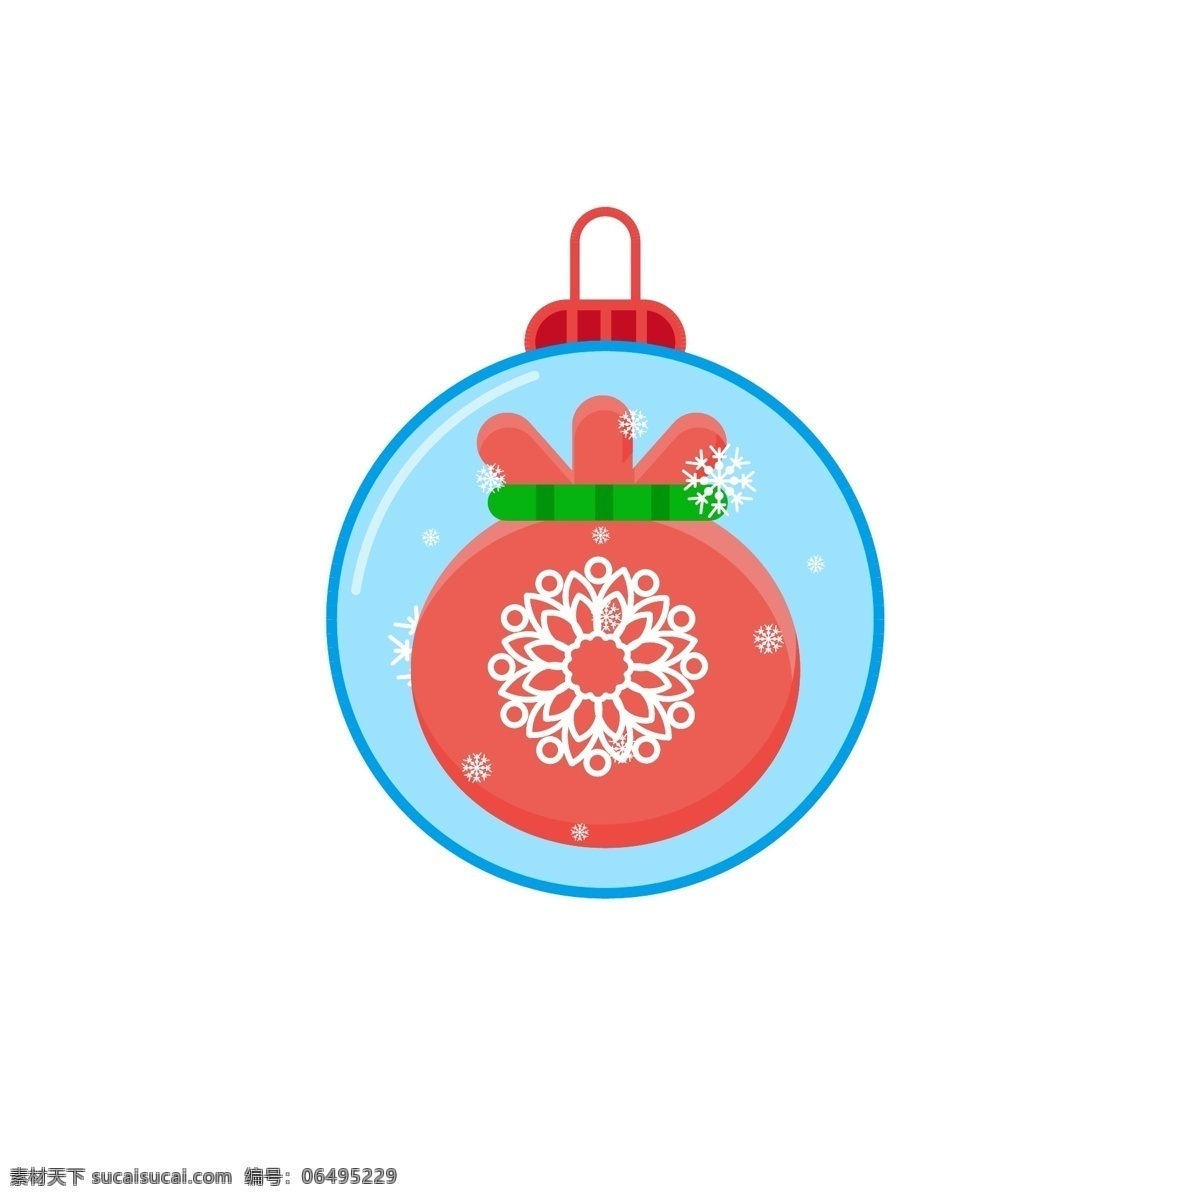 圣诞节 元素 装饰 图标 雪人 蝴蝶结 铃铛 雪花 装饰球 福袋